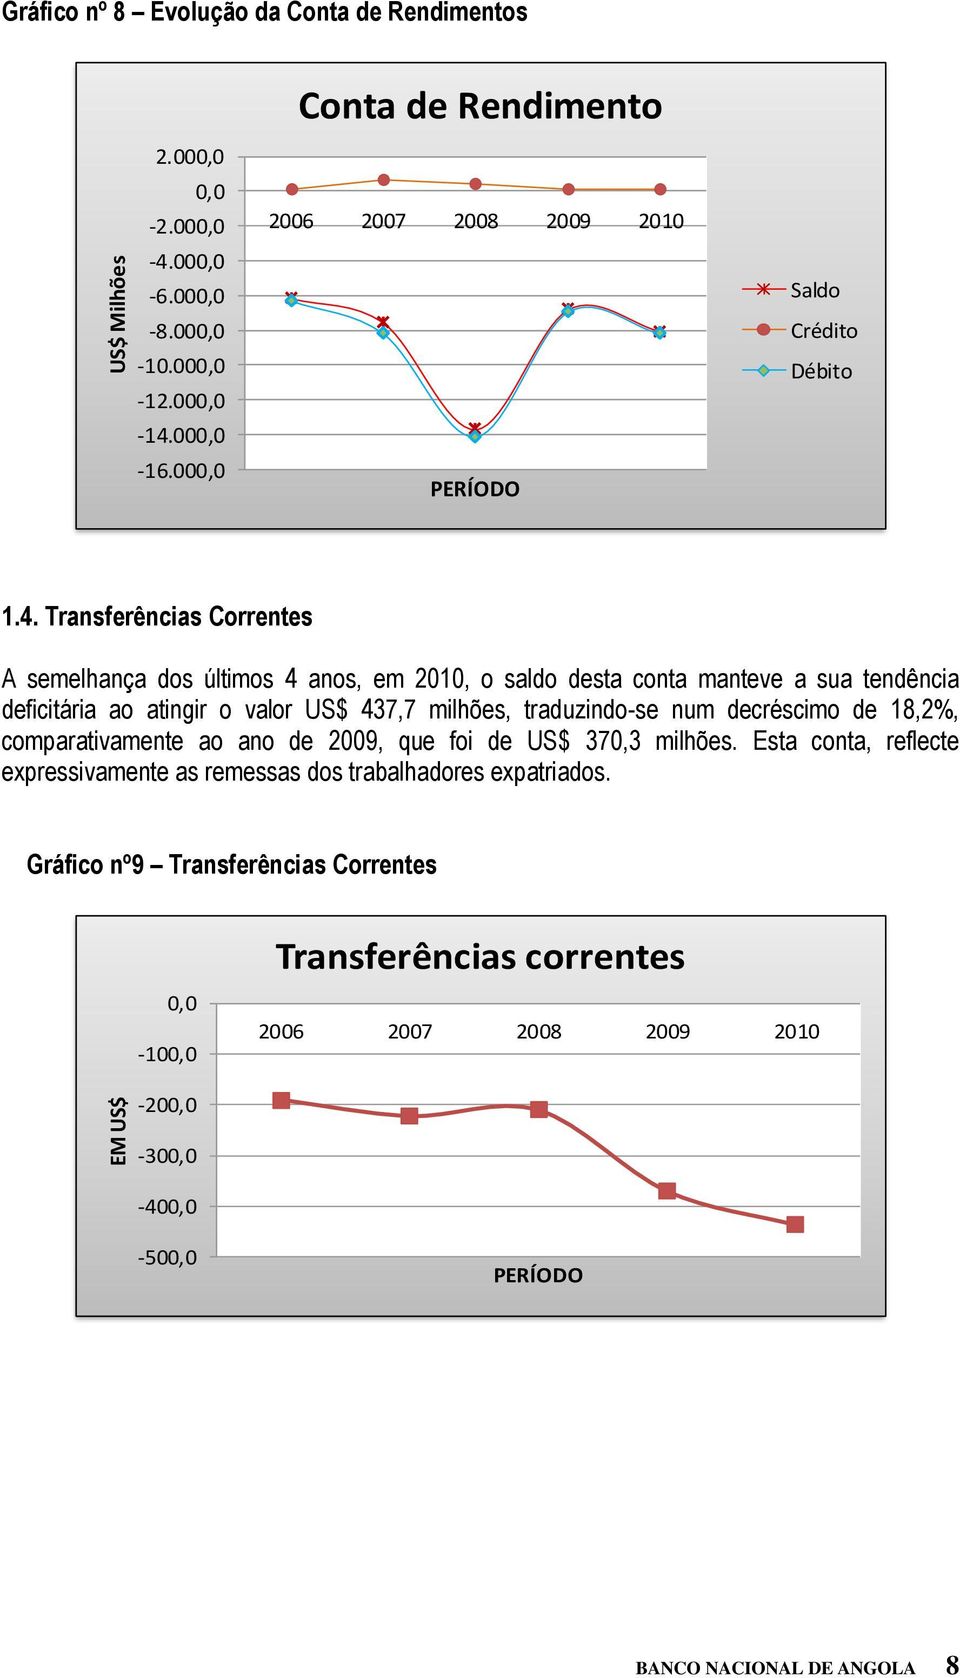 Transferências Correntes A semelhança dos últimos 4 anos, em 2010, o saldo desta conta manteve a sua tendência deficitária ao atingir o valor US$ 437,7 milhões, traduzindo-se num